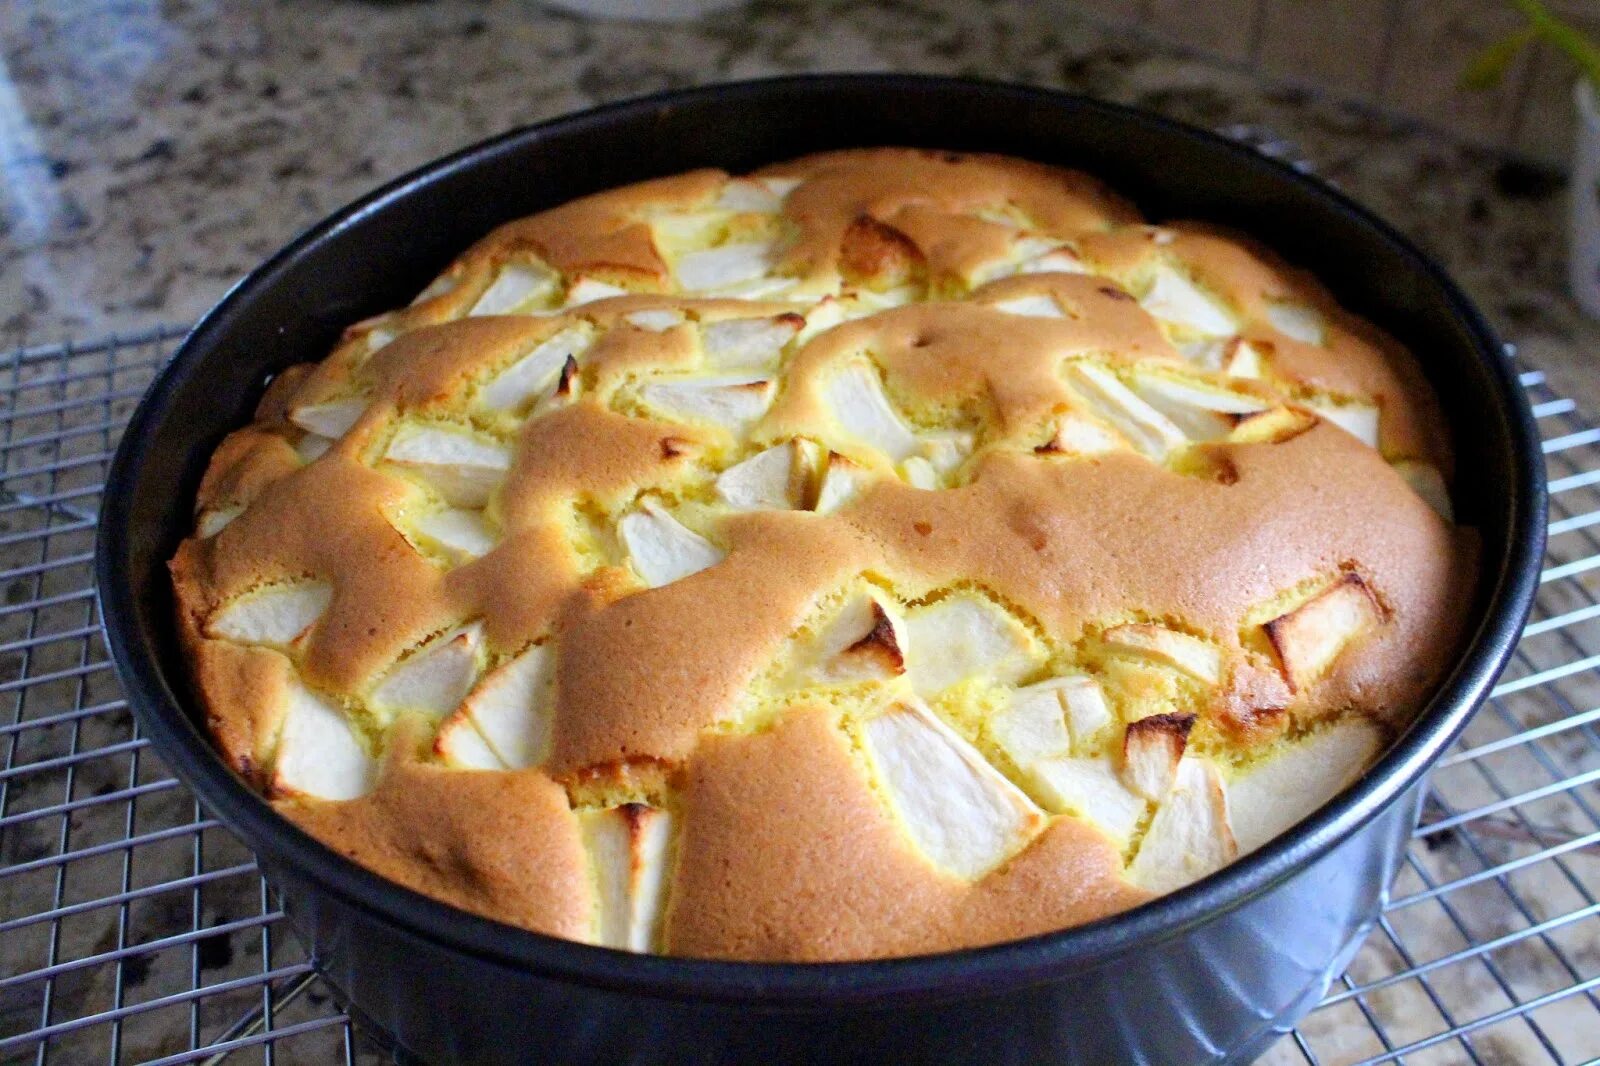 Рецепт яблочного пирога в духовке